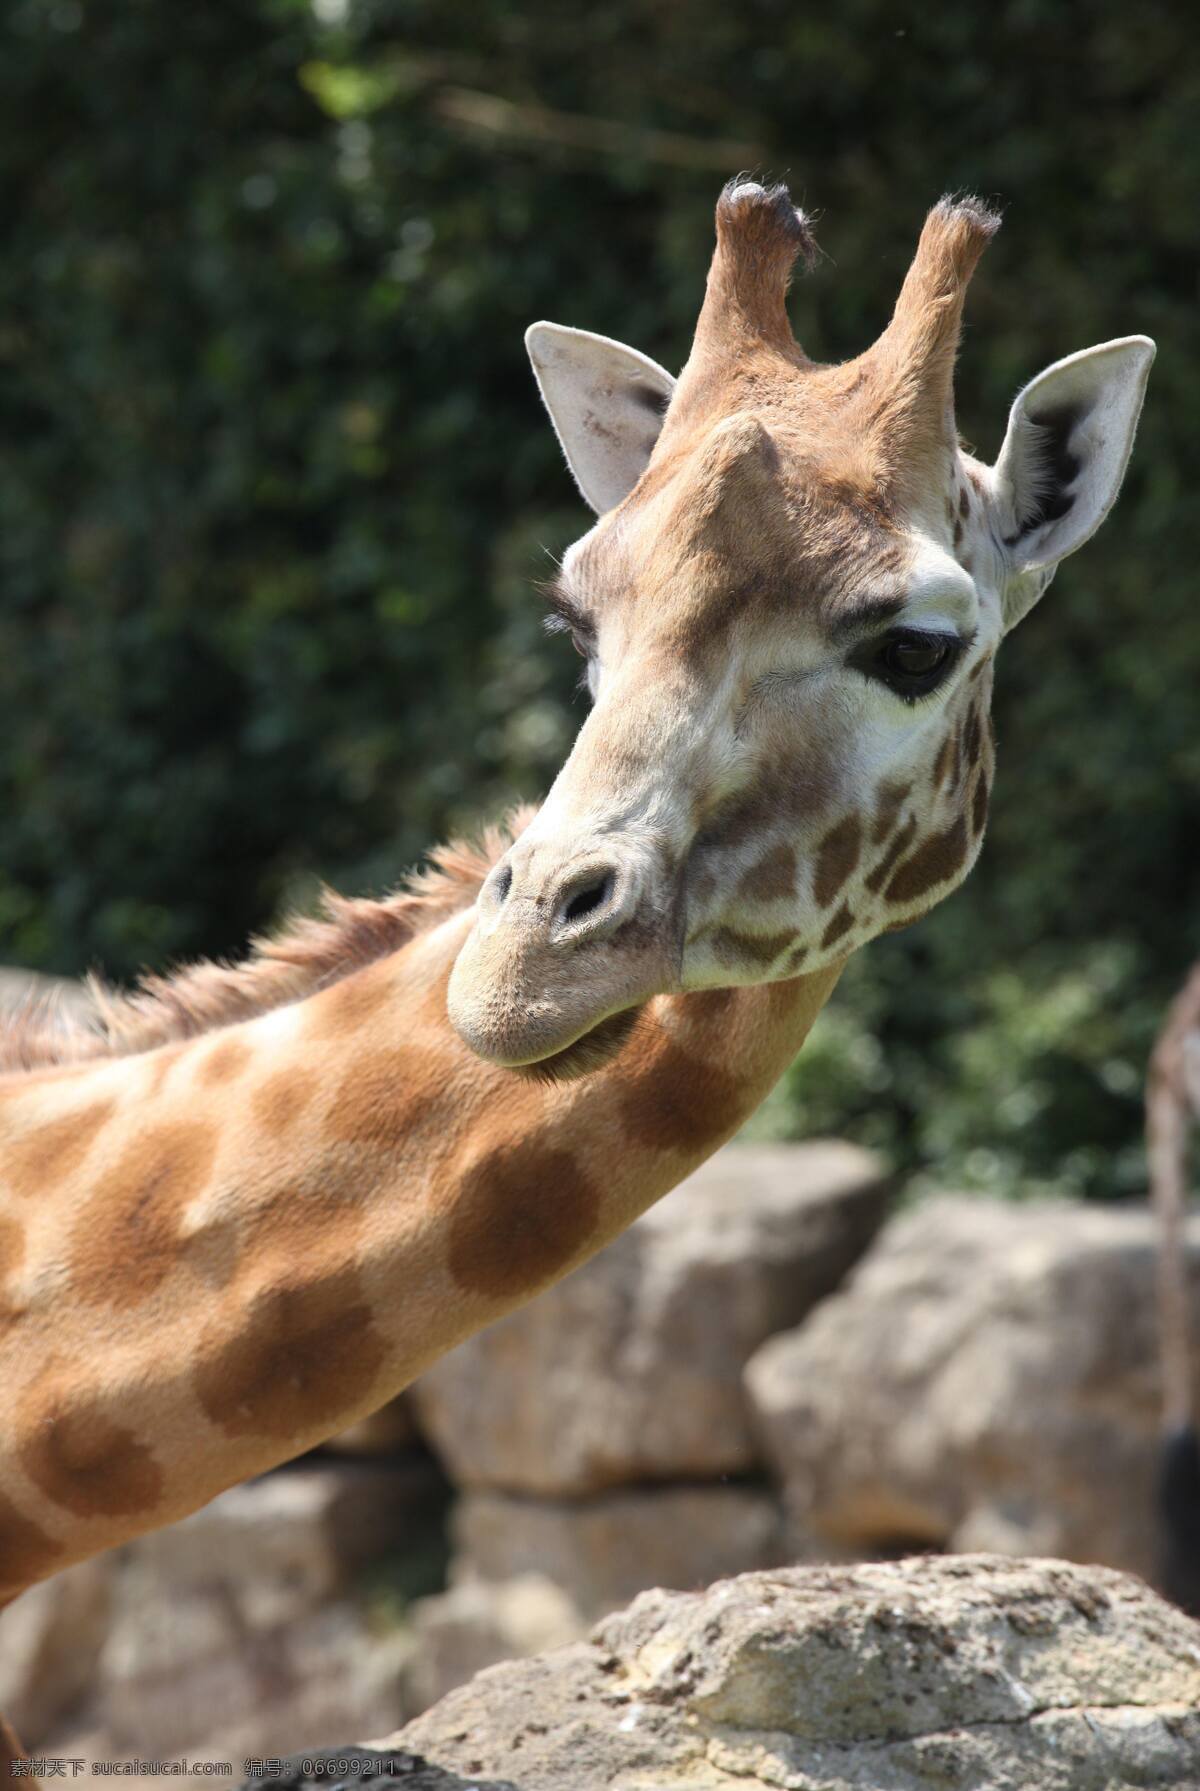 长颈鹿 长颈鹿特写 麒麟鹿 长脖鹿 鹿 可爱 鹿类 动物 野兽 长脖子 小长颈鹿 动物园 兽类 生物世界 野生动物